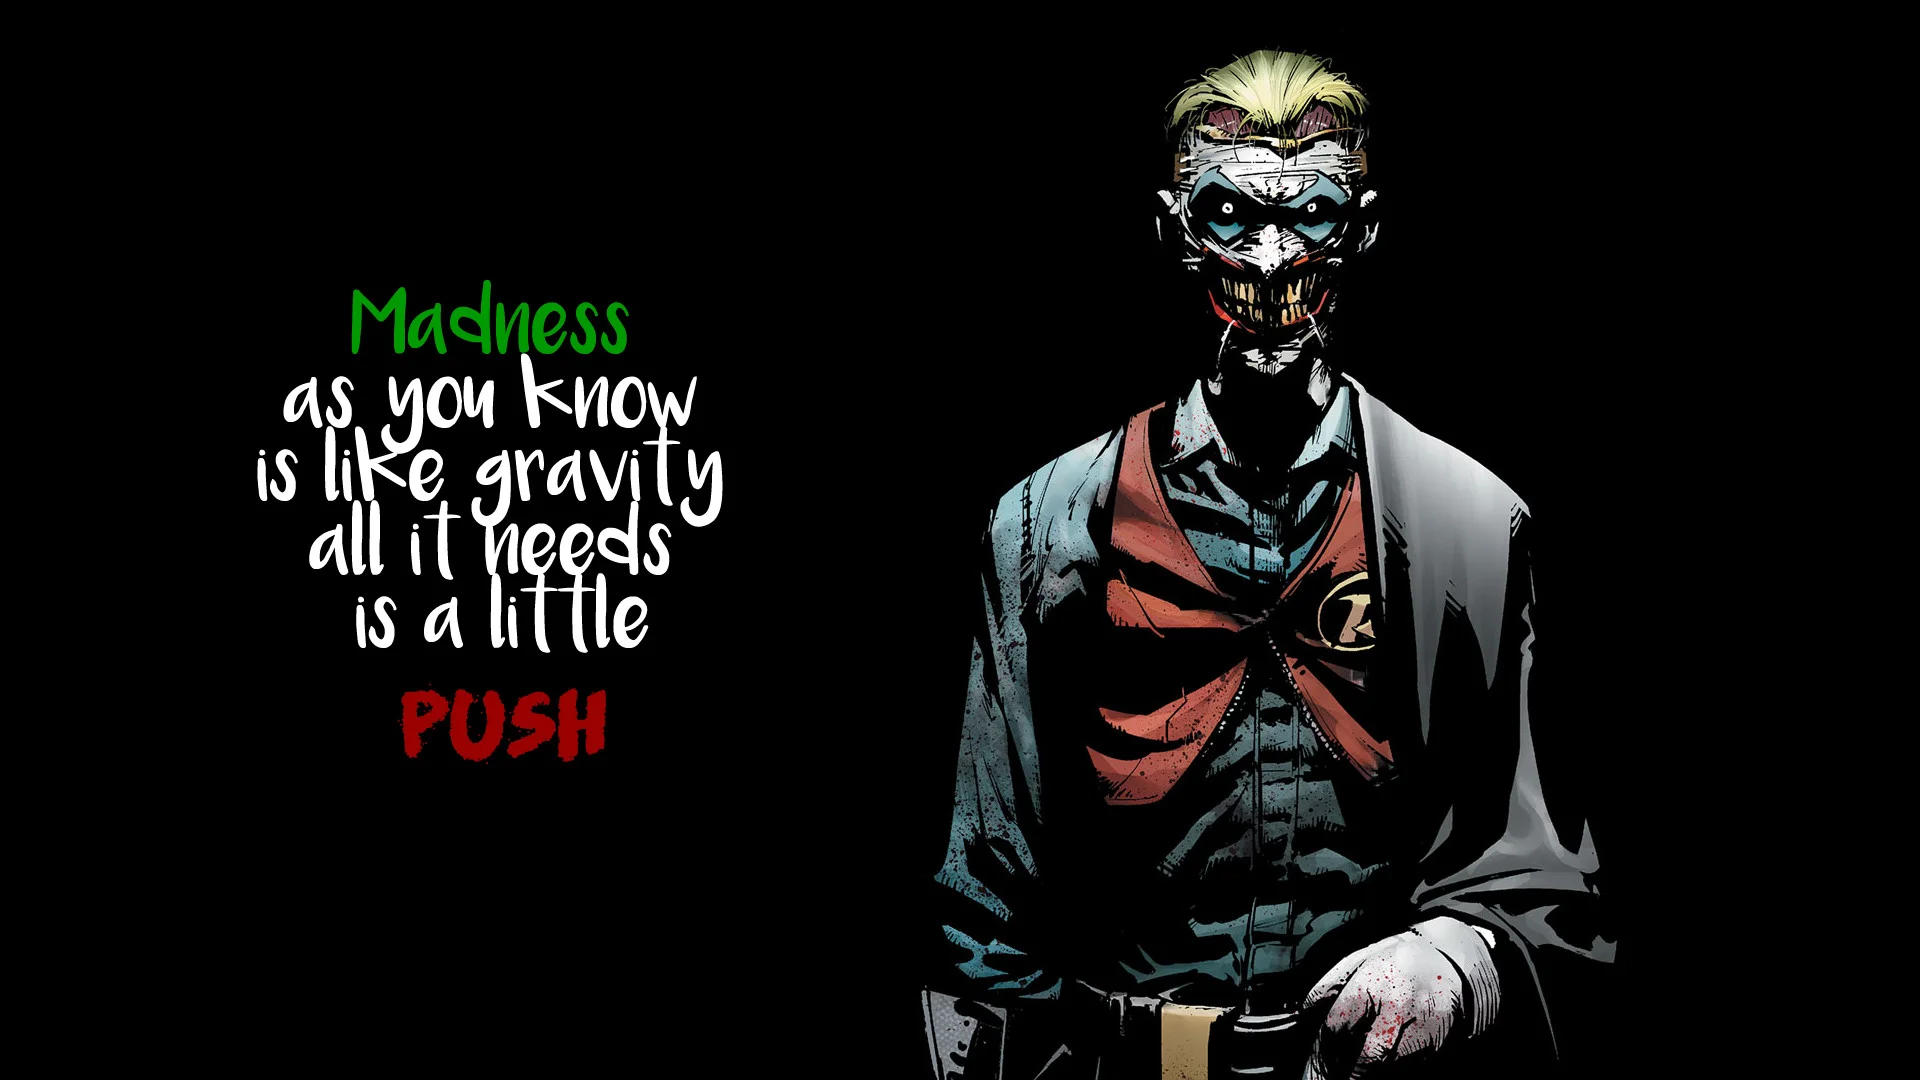 General Joker quote